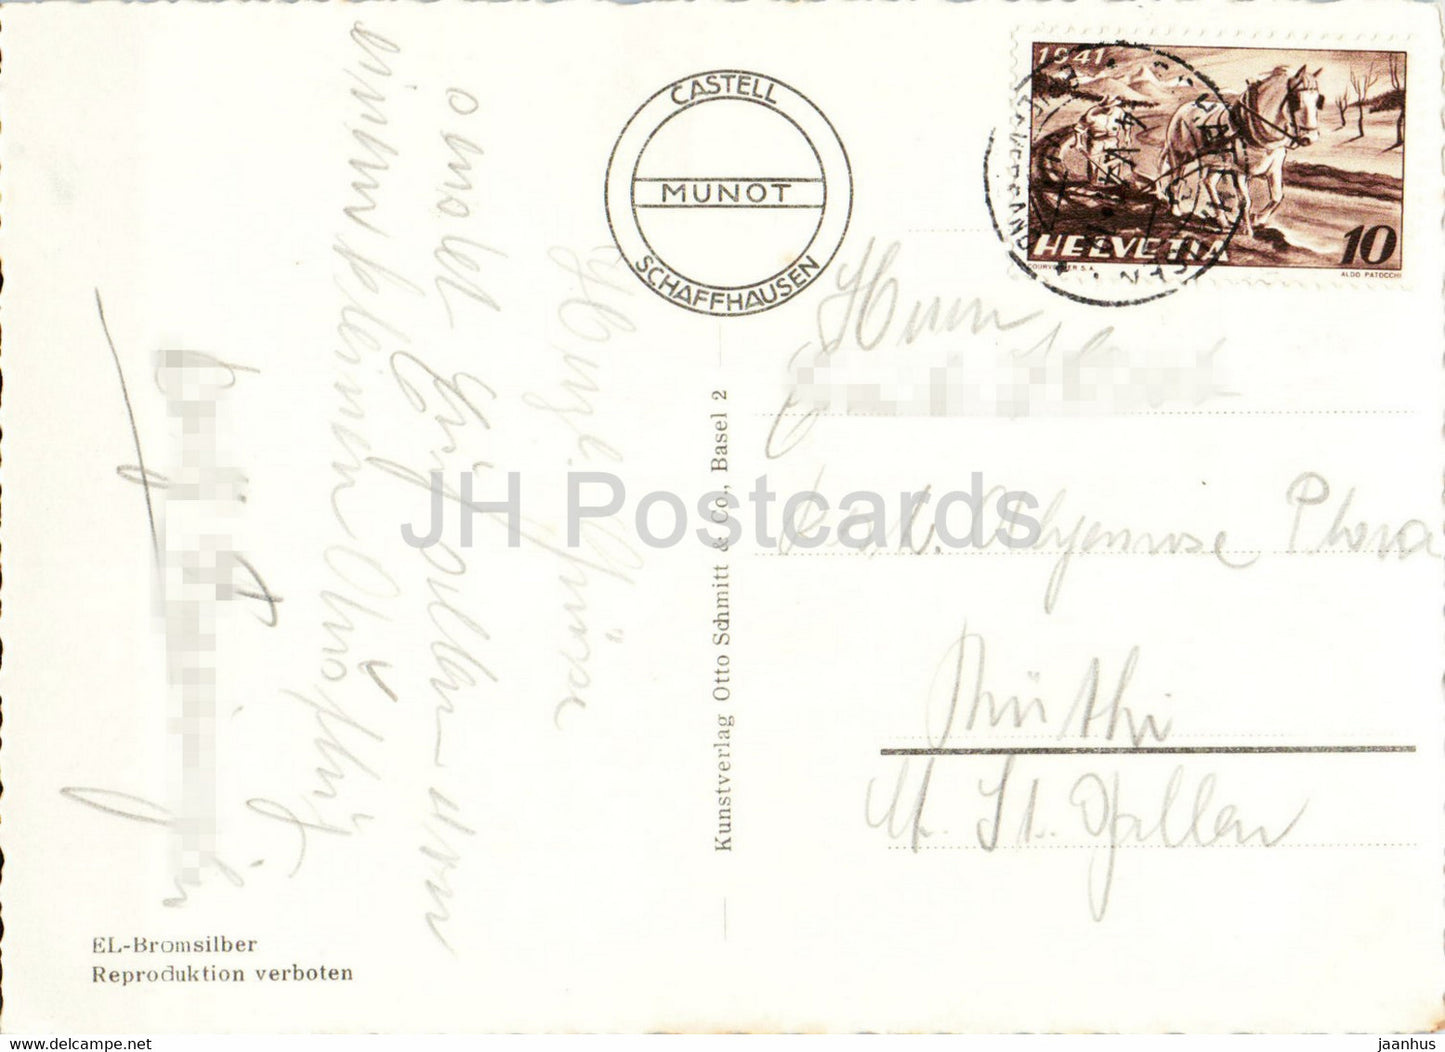 Schaffhausen - Munot - 1941 - old postcard - Switzerland - used